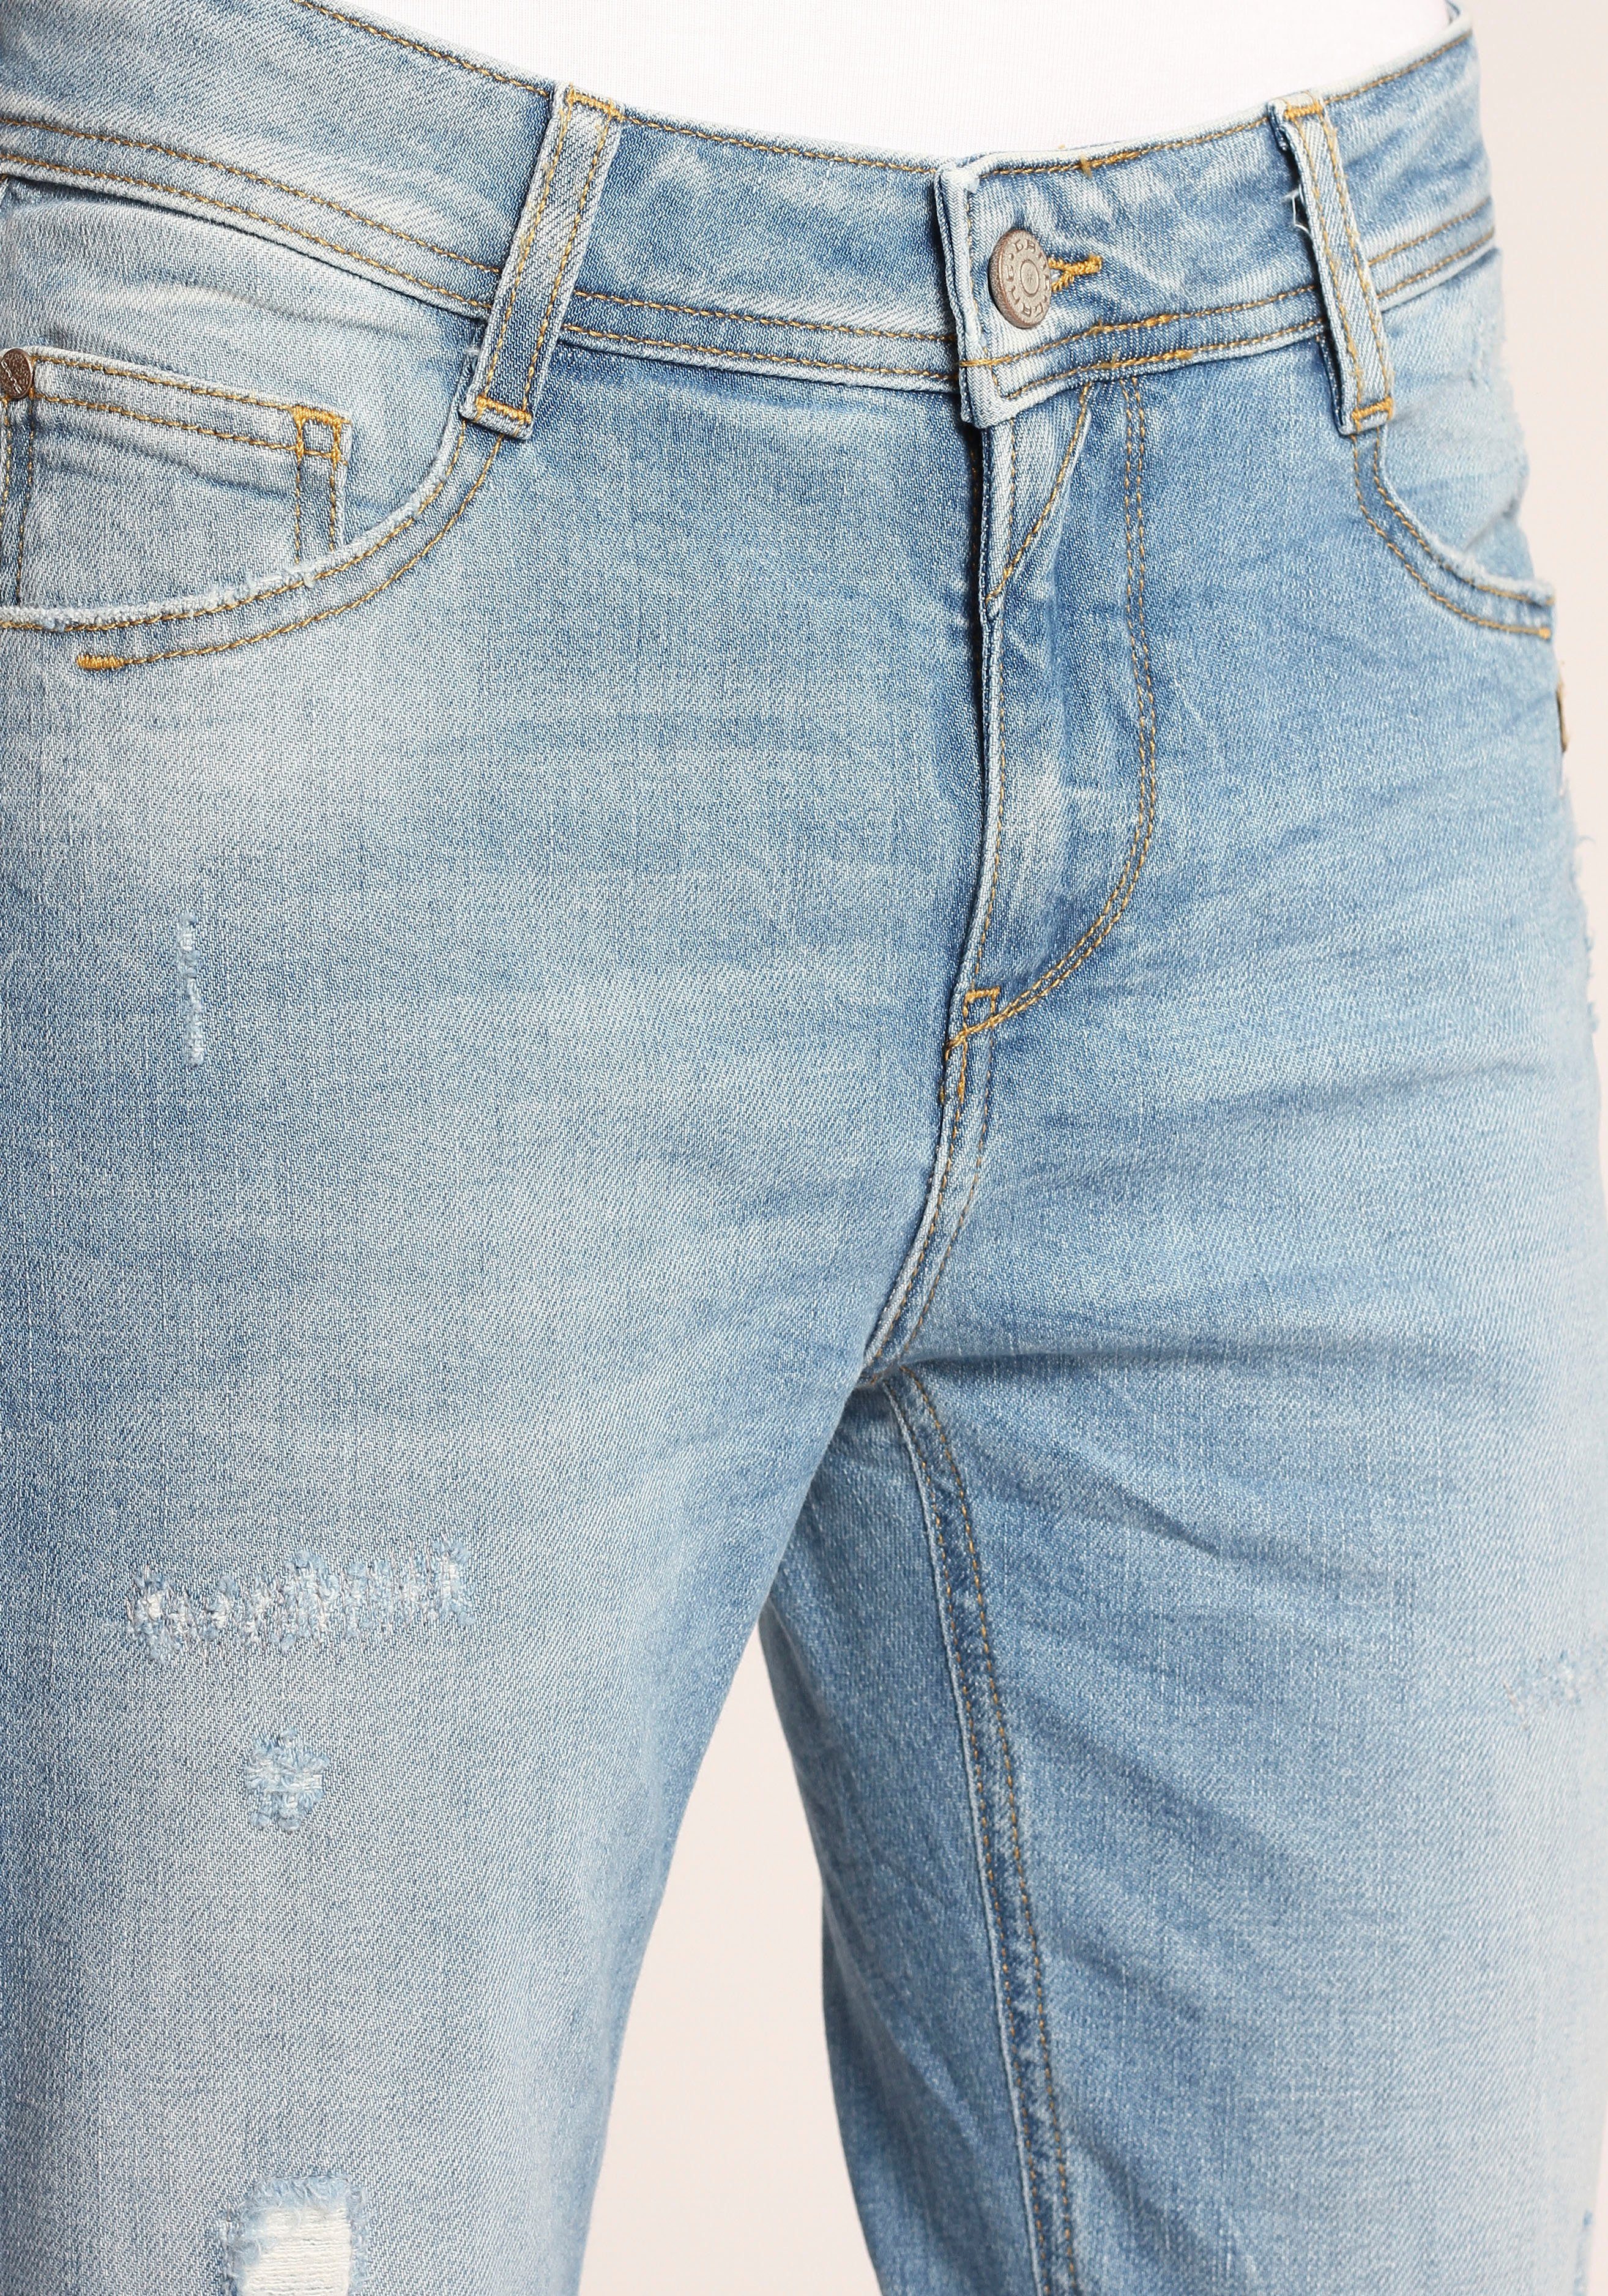 GANG verkürzter Kante CROPPED Relax-fit-Jeans Beinlänge 94AMELIE mit ausgefranster und Saumabschluss am